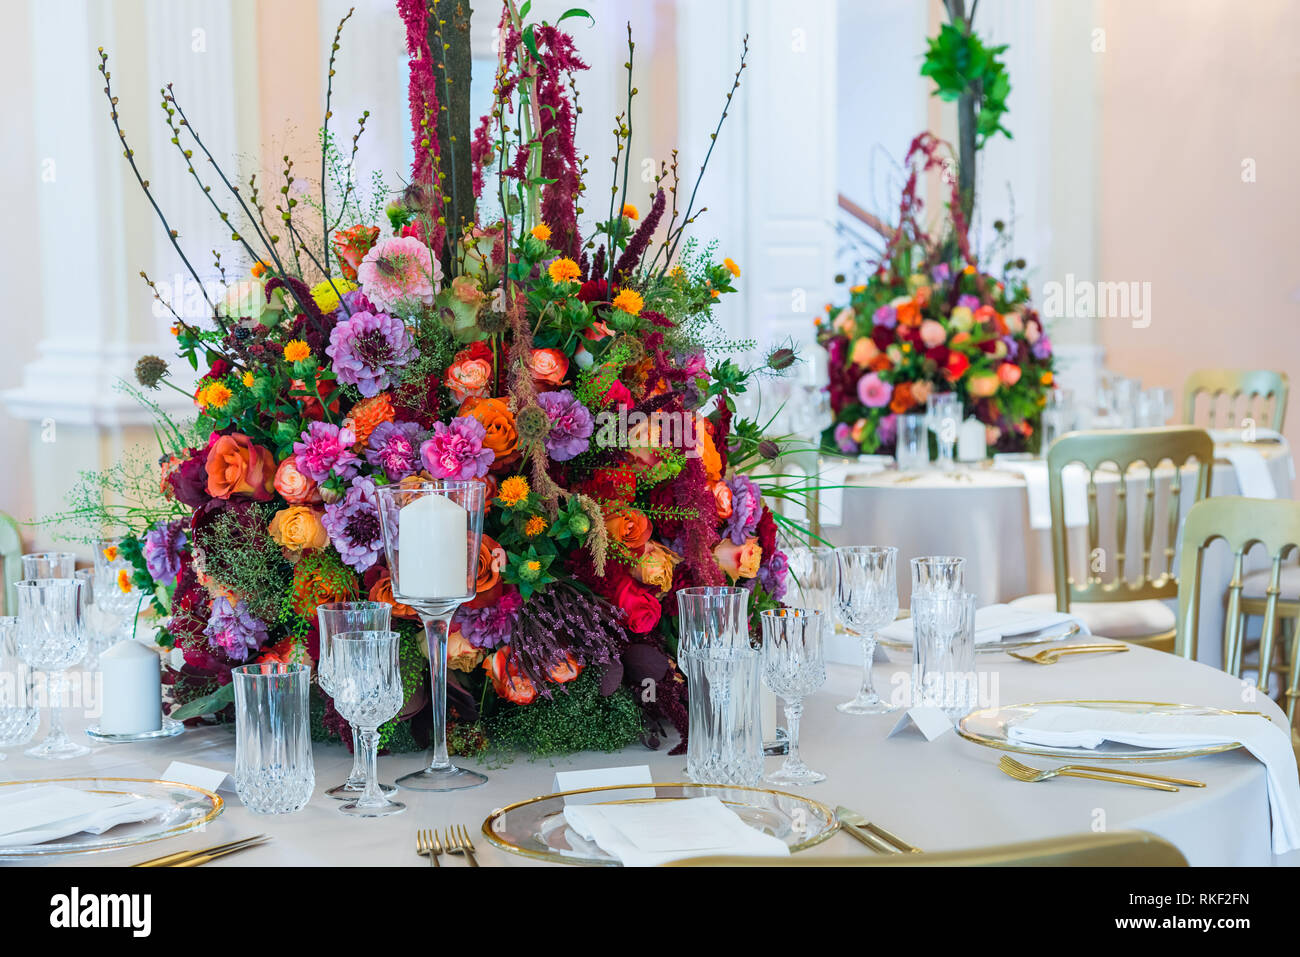 Décoration de table de mariage. Beau bouquet de fleurs sur la table, à côté  des assiettes, verres en cristal et les plaques Photo Stock - Alamy